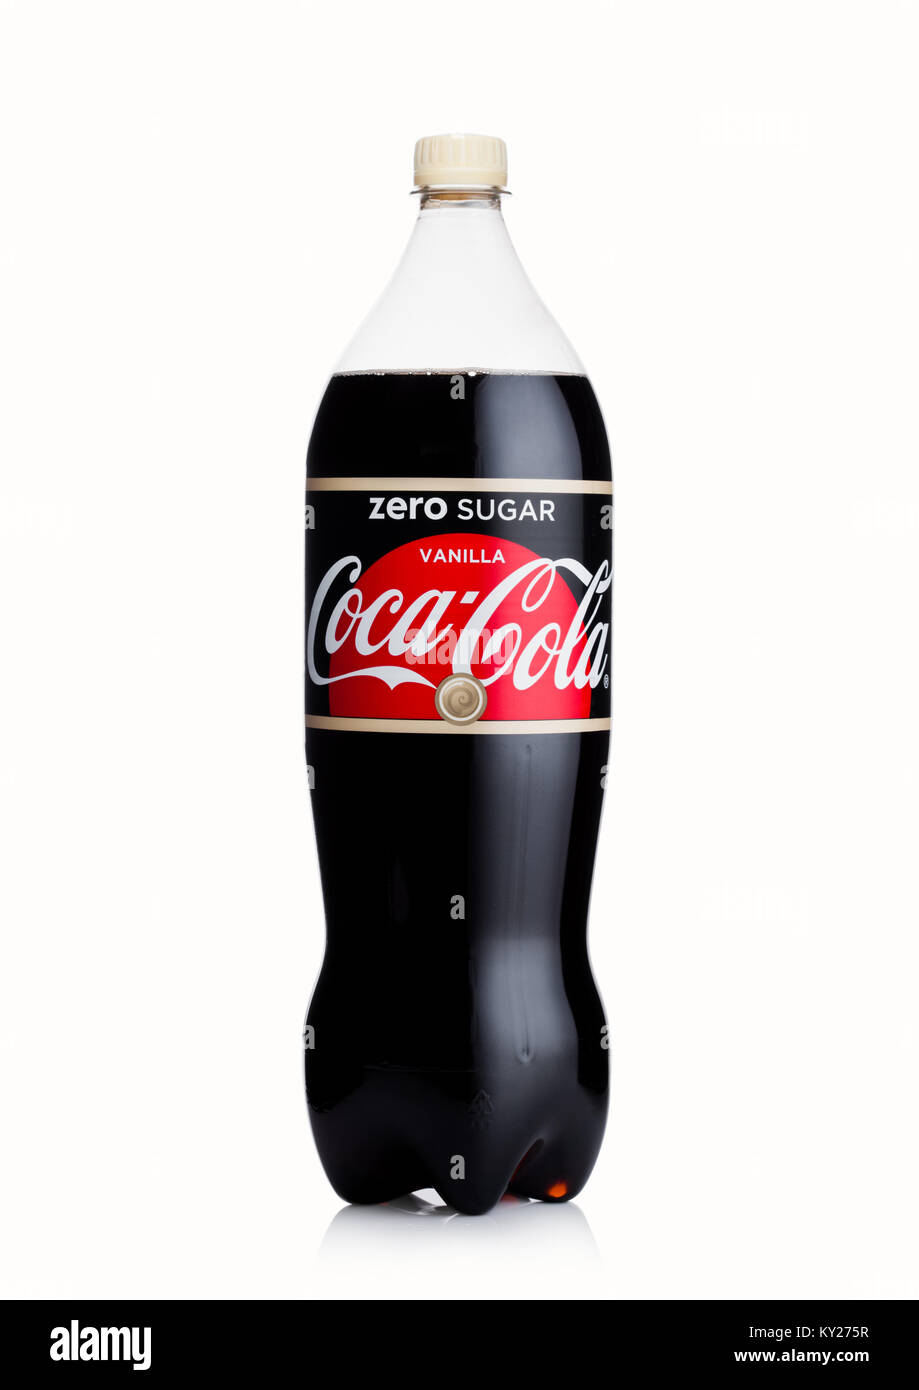 LONDON, Großbritannien - 02 Januar, 2018: Große Kunststoff Flasche Coca Cola  null Kalorien vanille Drink auf weißem Hintergrund das Getränk hergestellt  wird und manufactur Stockfotografie - Alamy